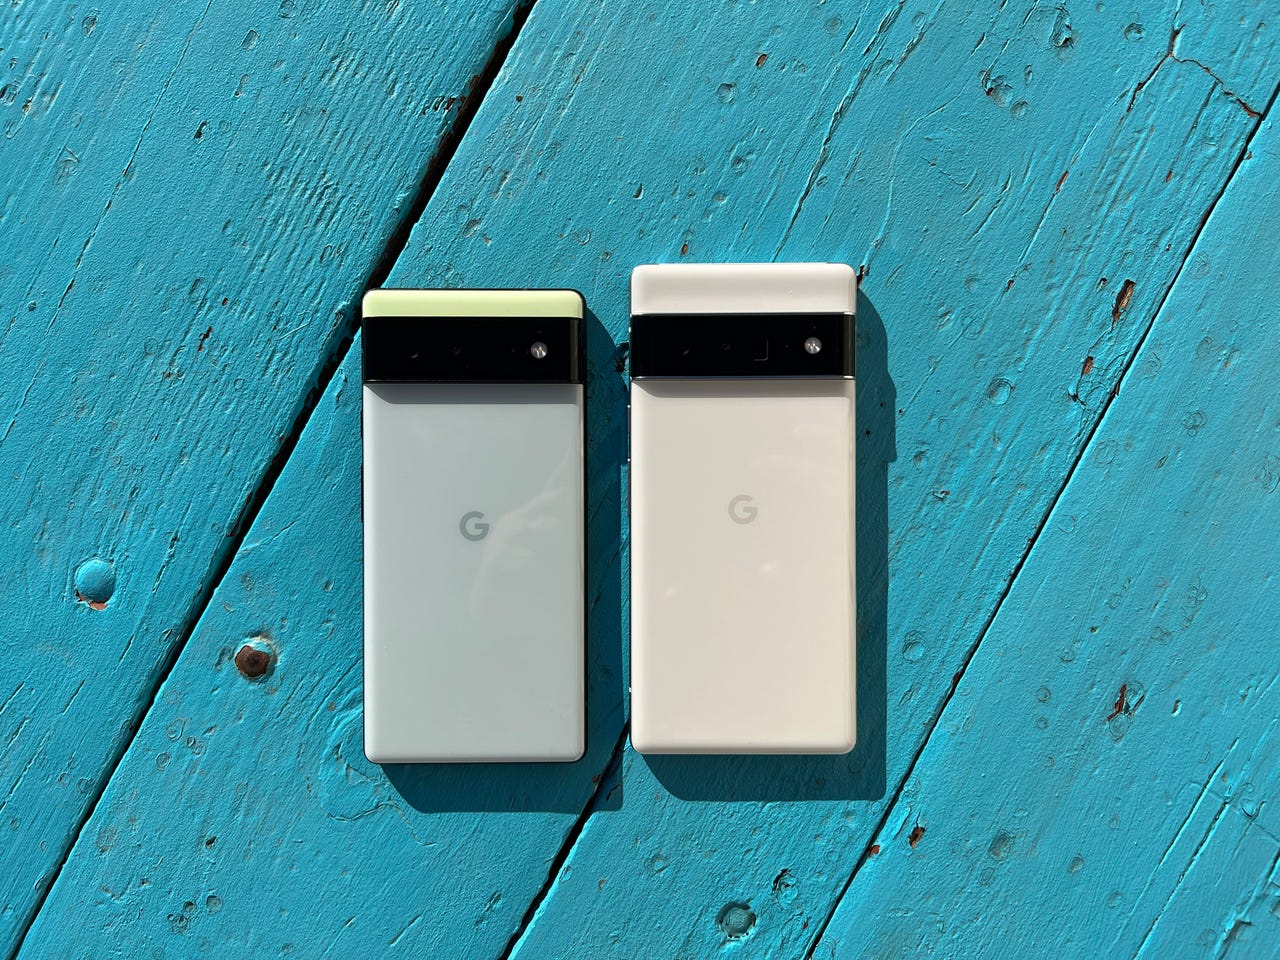 Google Pixel 6 - Đối với những ai đang muốn tìm kiếm điện thoại tốt nhất mà Google có thể cung cấp, Pixel 6 là sự lựa chọn hàng đầu. Với camera chuyên nghiệp và màn hình OLED rực rỡ, Pixel 6 là một trong những sản phẩm hàng đầu của năm